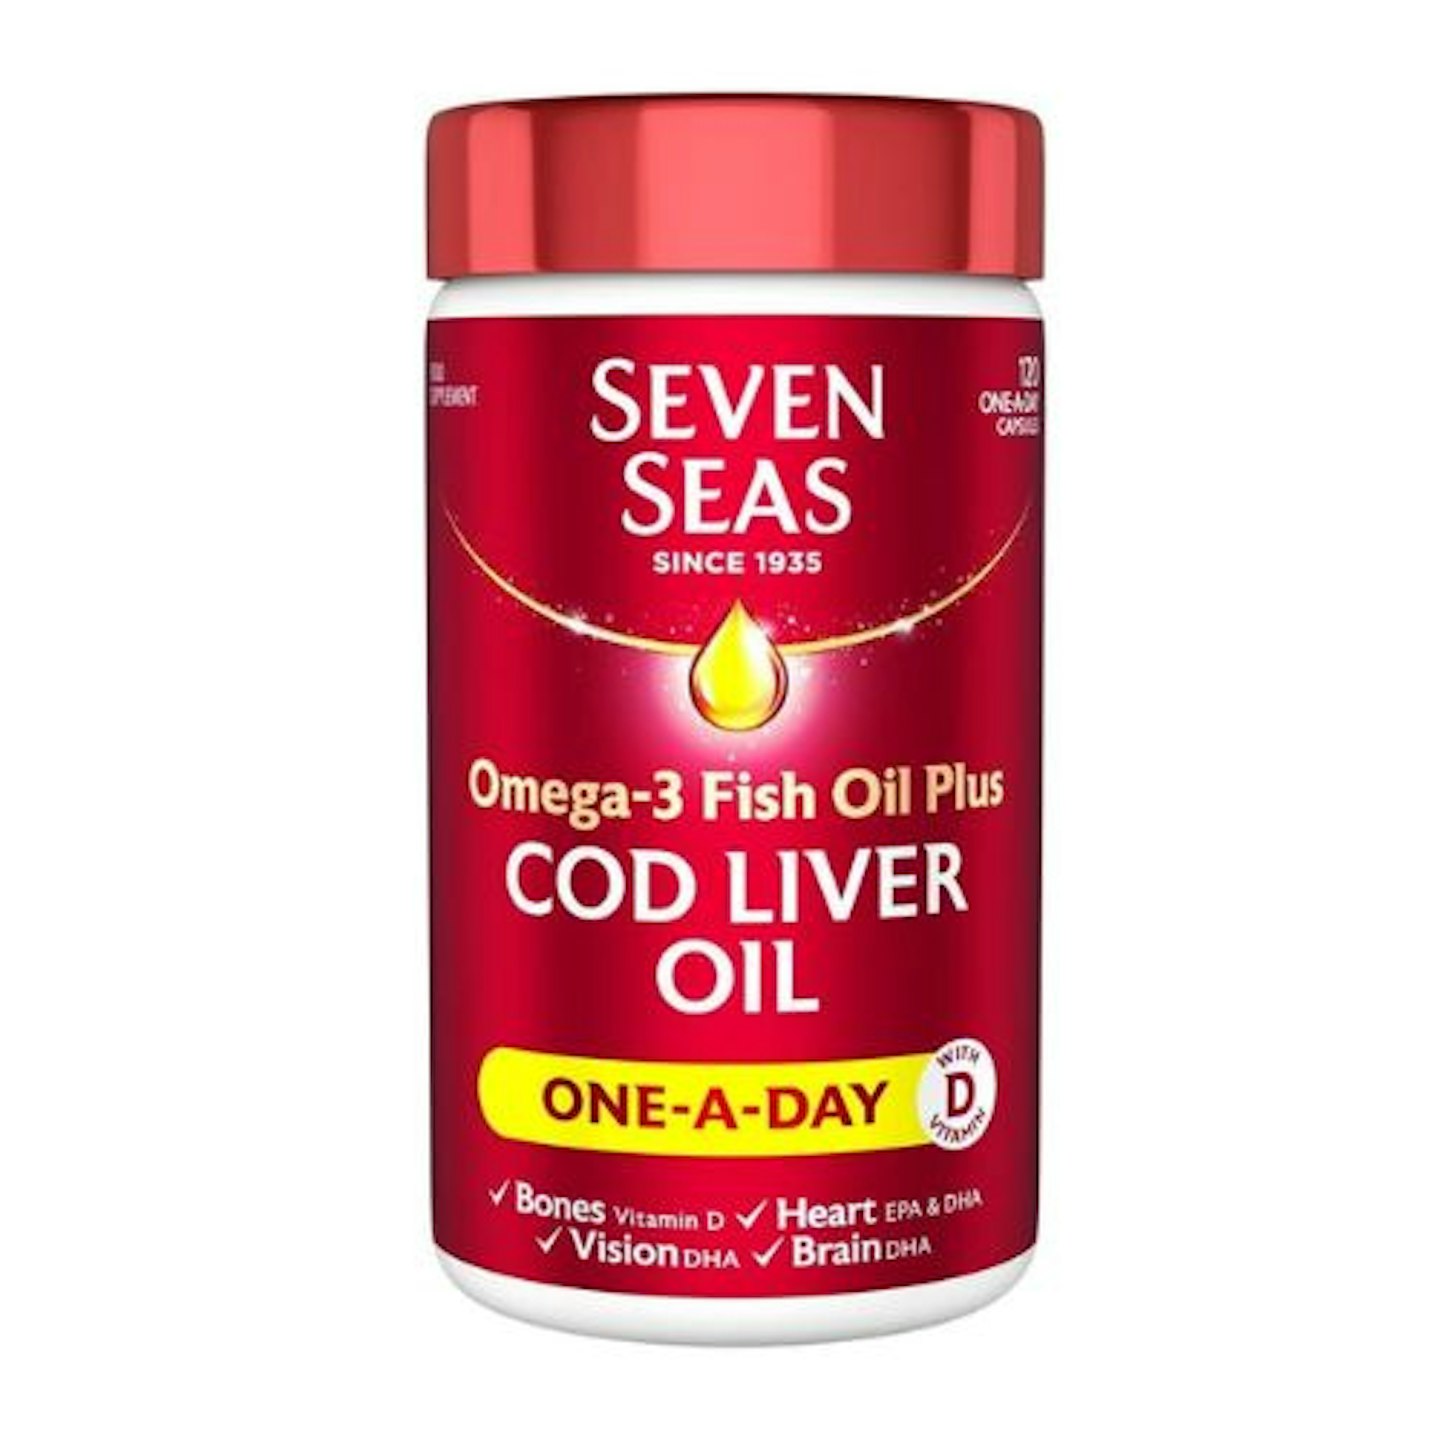 Seven Seas Omega-3 FISH Oil Plus Cod Liver Oil, 120 Capsules